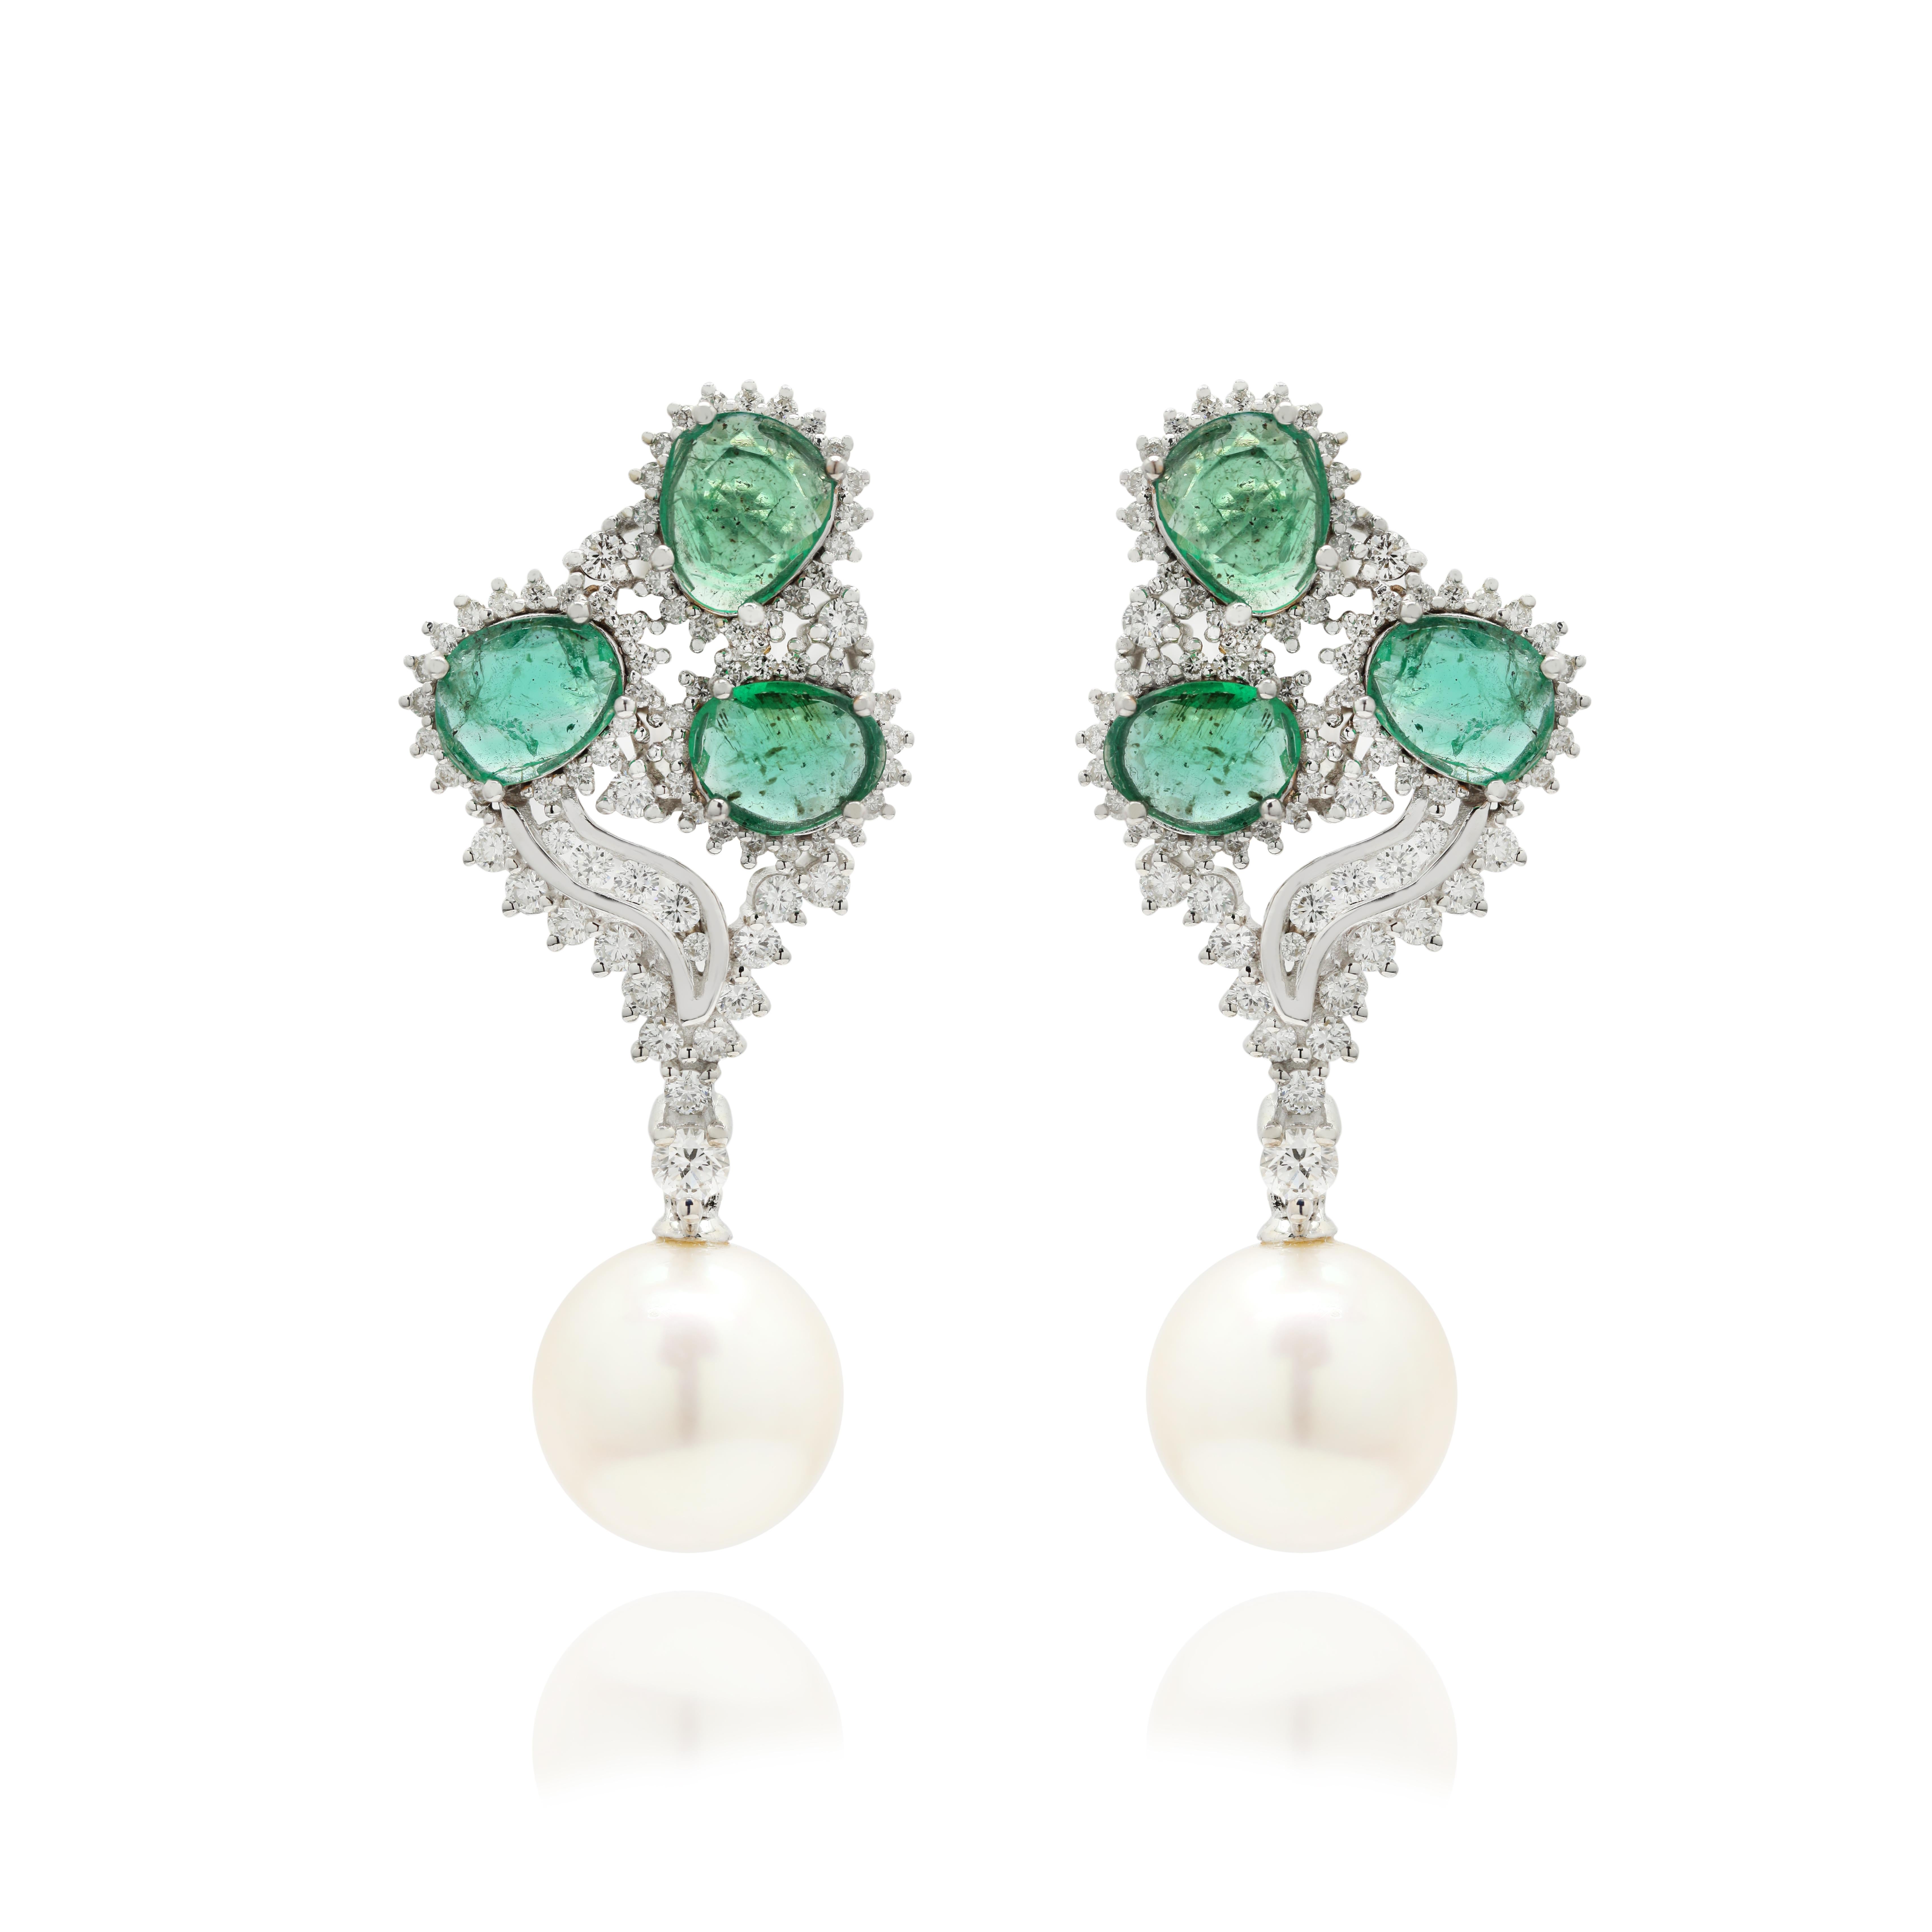 Smaragd-, Perlen- und Diamant-Ohrringe, um mit Ihrem Look ein Statement zu setzen. Diese Ohrringe mit ovalem Schliff sorgen für einen funkelnden, luxuriösen Look.
Wenn Sie einen Hang zu einzigartigen Stilen haben, ist dieses Schmuckstück genau das